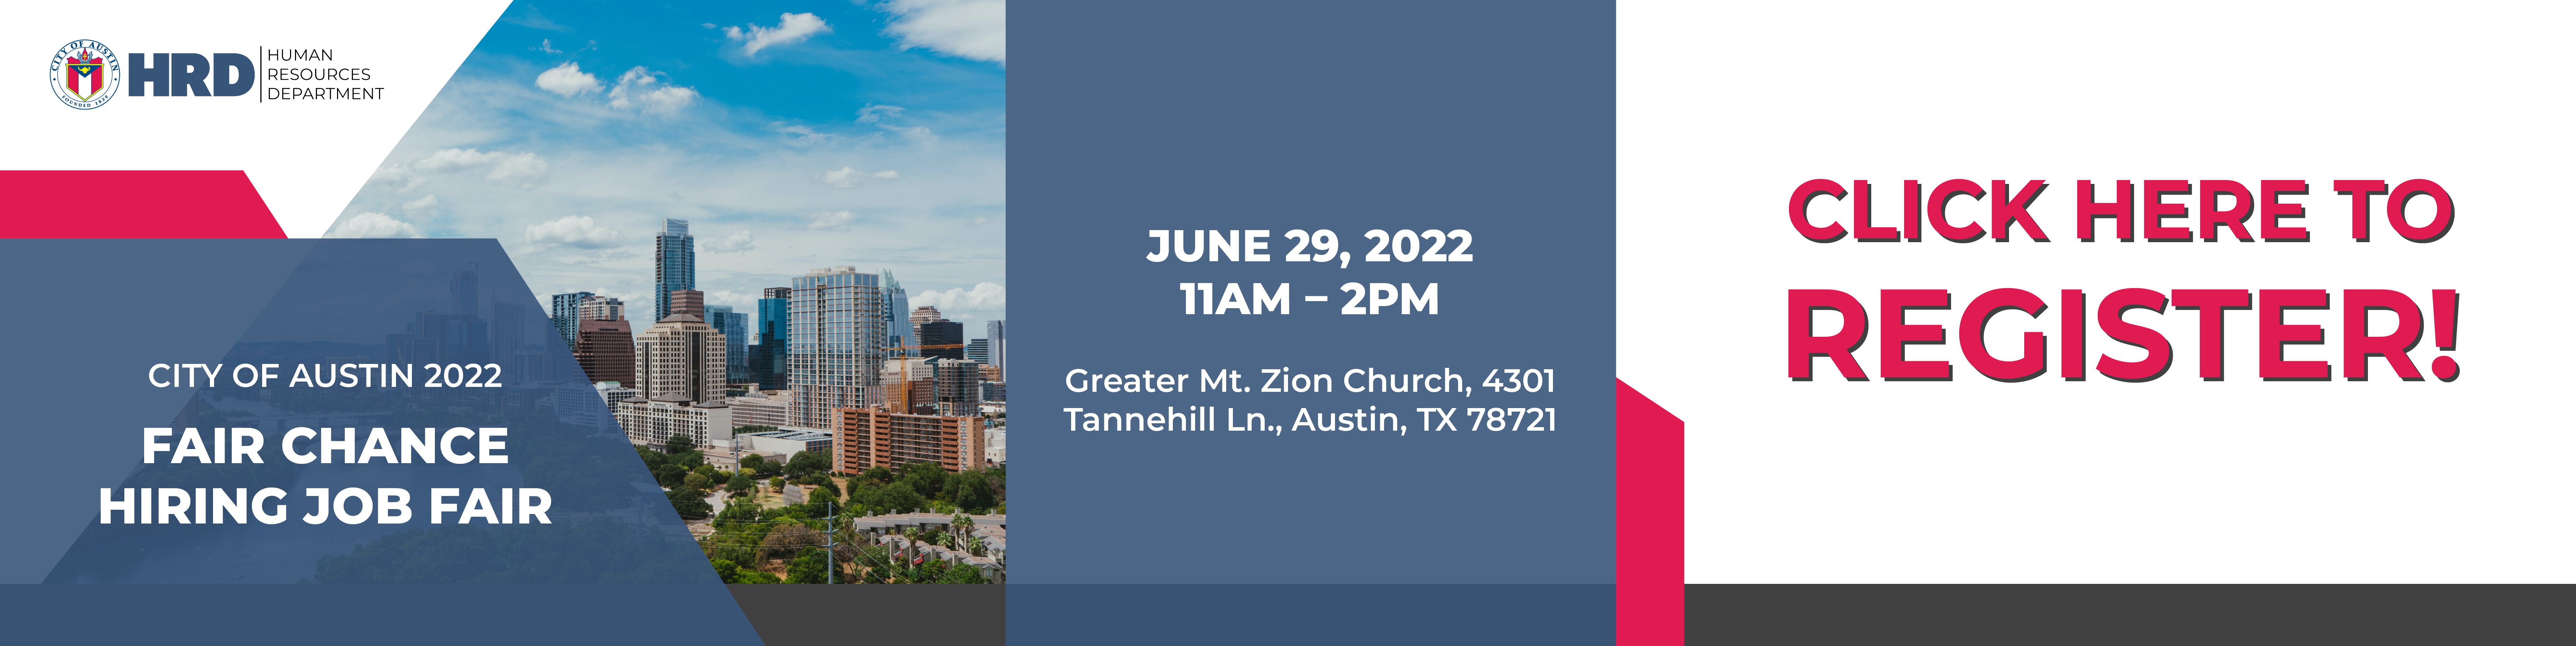 Office of Civil Rights Fair Chance Hiring Job Fair, June 29, 2022, 11 a.m. - 2 p.m., Greater Mt. Zion Church, 4301 Tannehill Ln., Austin, TX, 78721. Click to register.